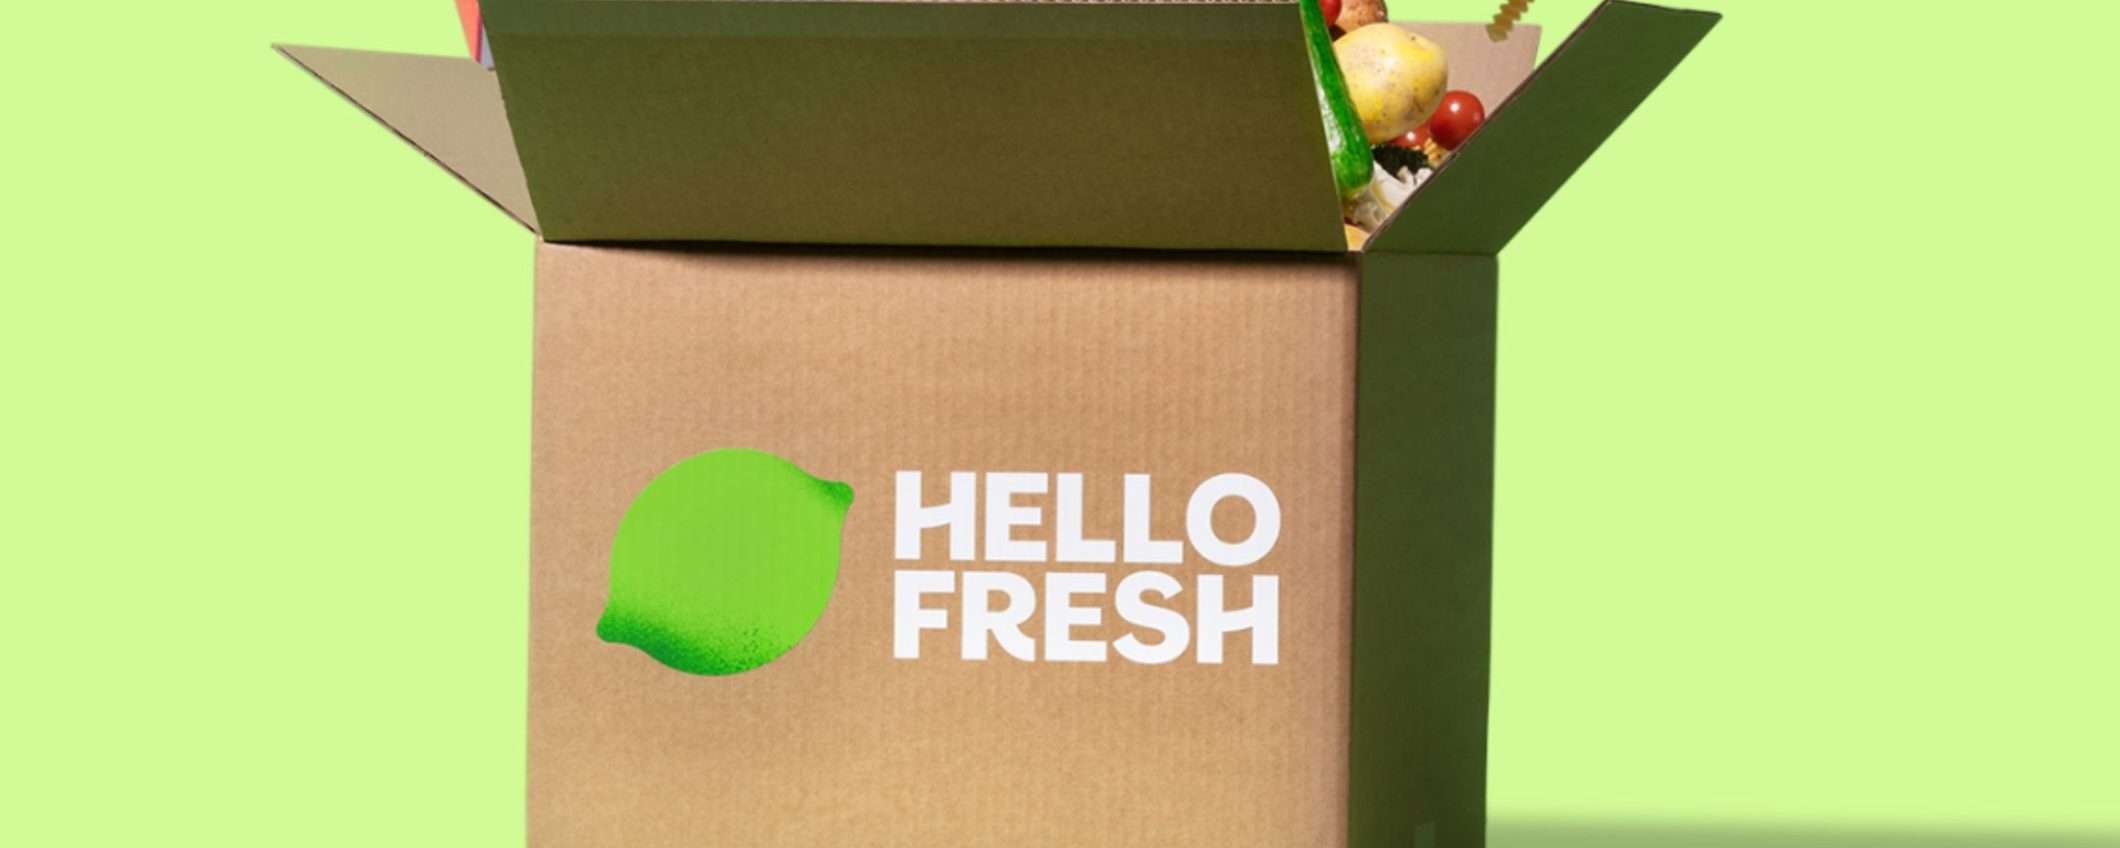 La box di HelloFresh è geniale: cucina ogni giorno ricette nuove con ingredienti già dosati